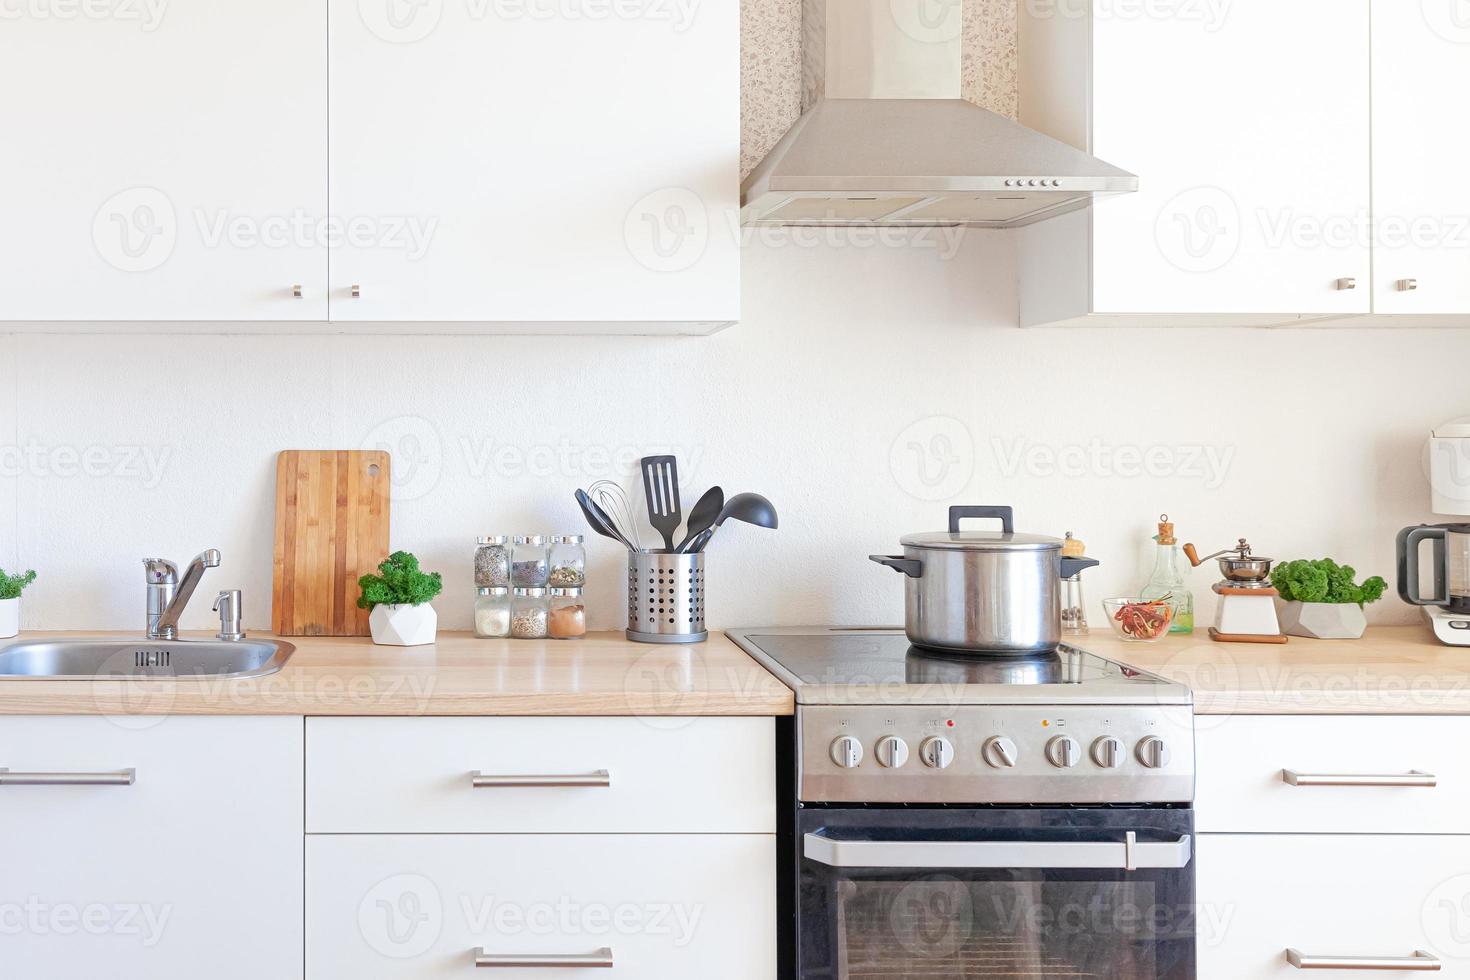 Cocina minimalista clásica escandinava con detalles en blanco y madera. cocina blanca moderna diseño de interiores de estilo contemporáneo limpio. foto